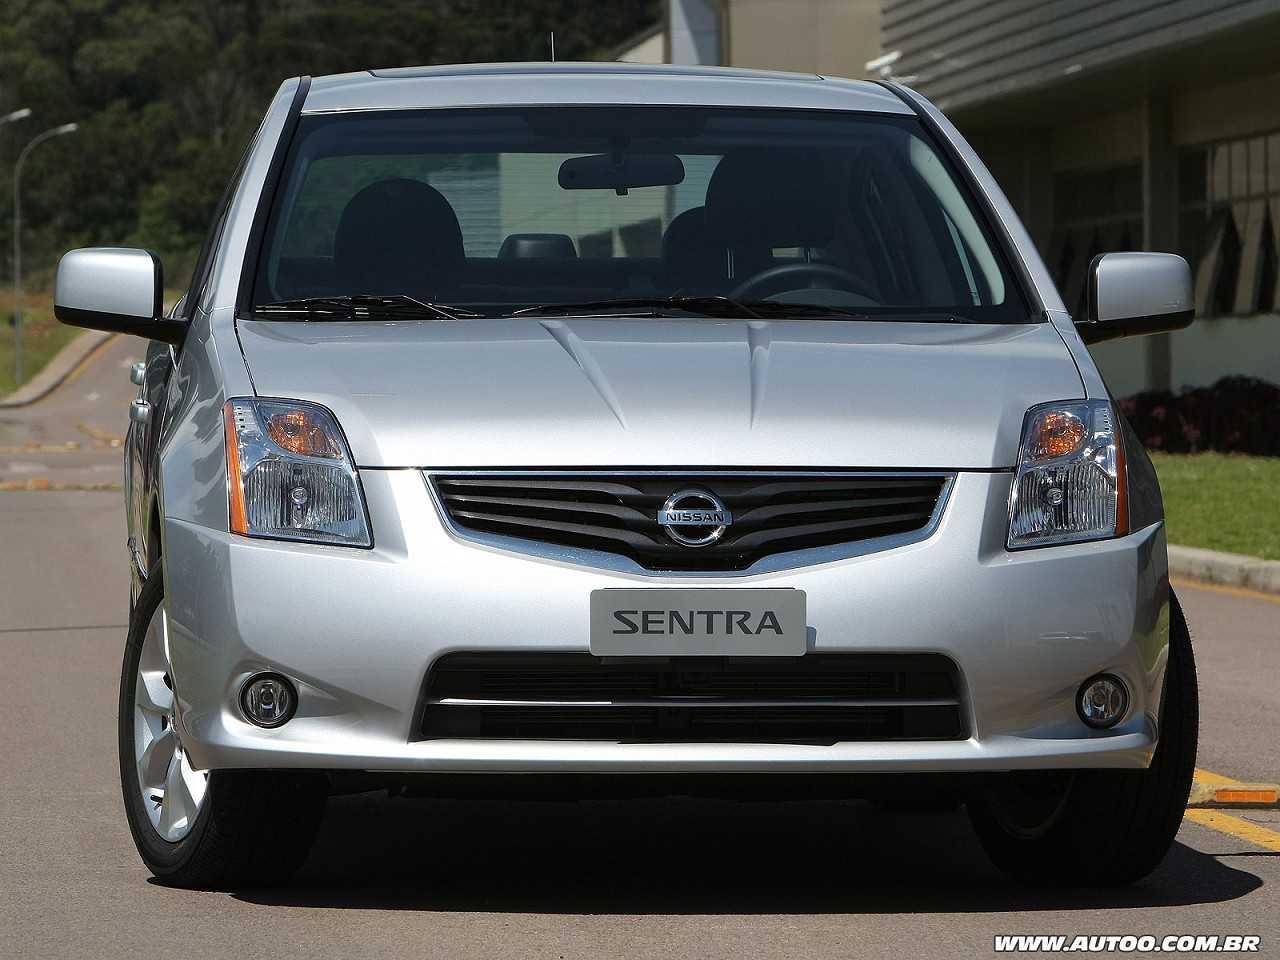 Comprar um carro com R$ 30.000: optar por um Renault Kwid ou um Nissan Sentra 2012?